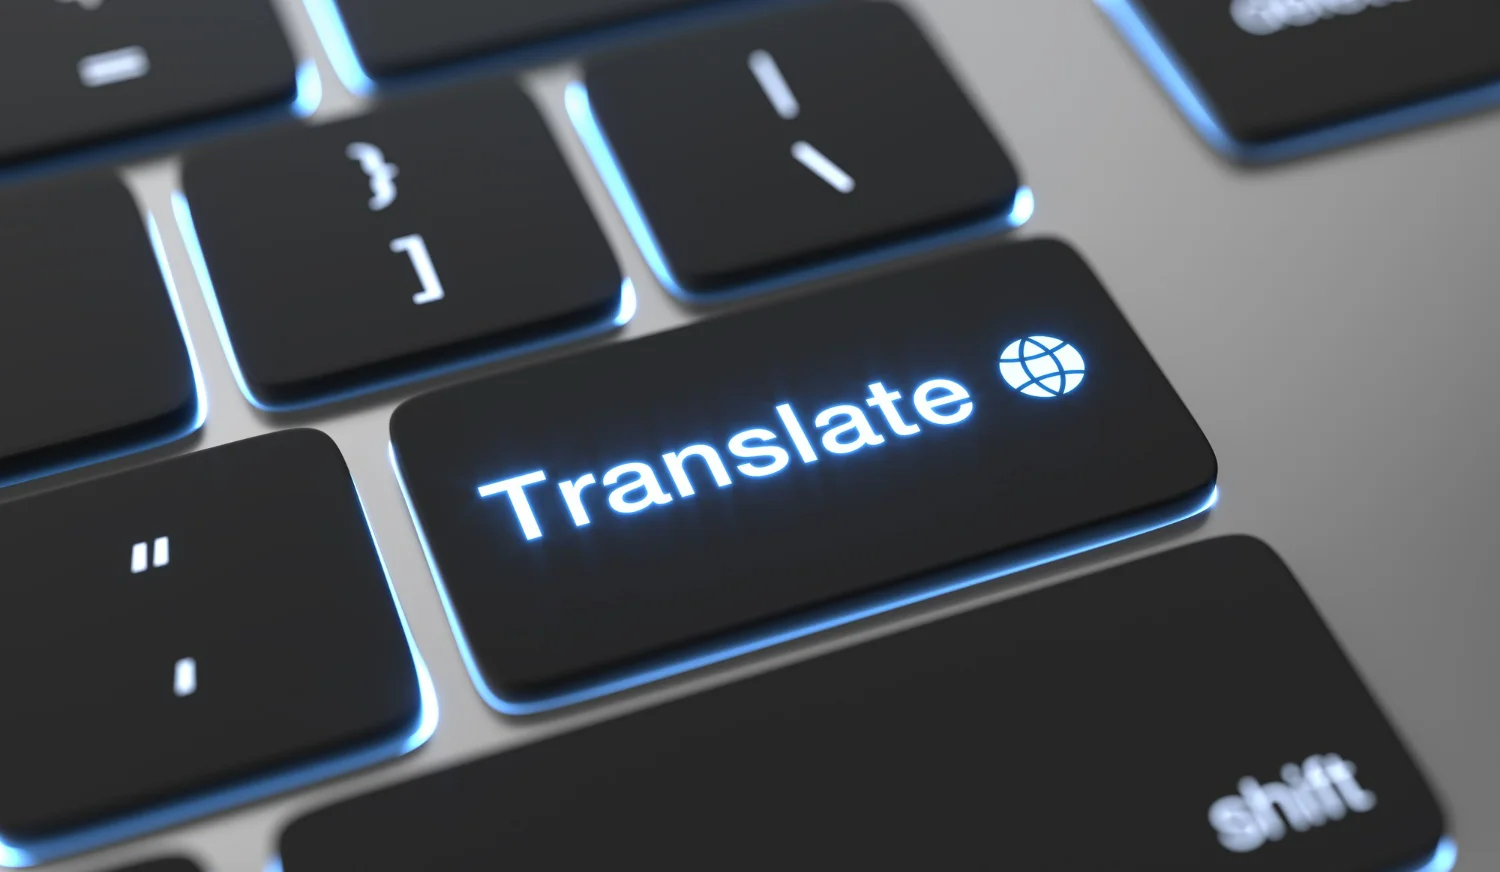 Vantagens e riscos da tradução automática